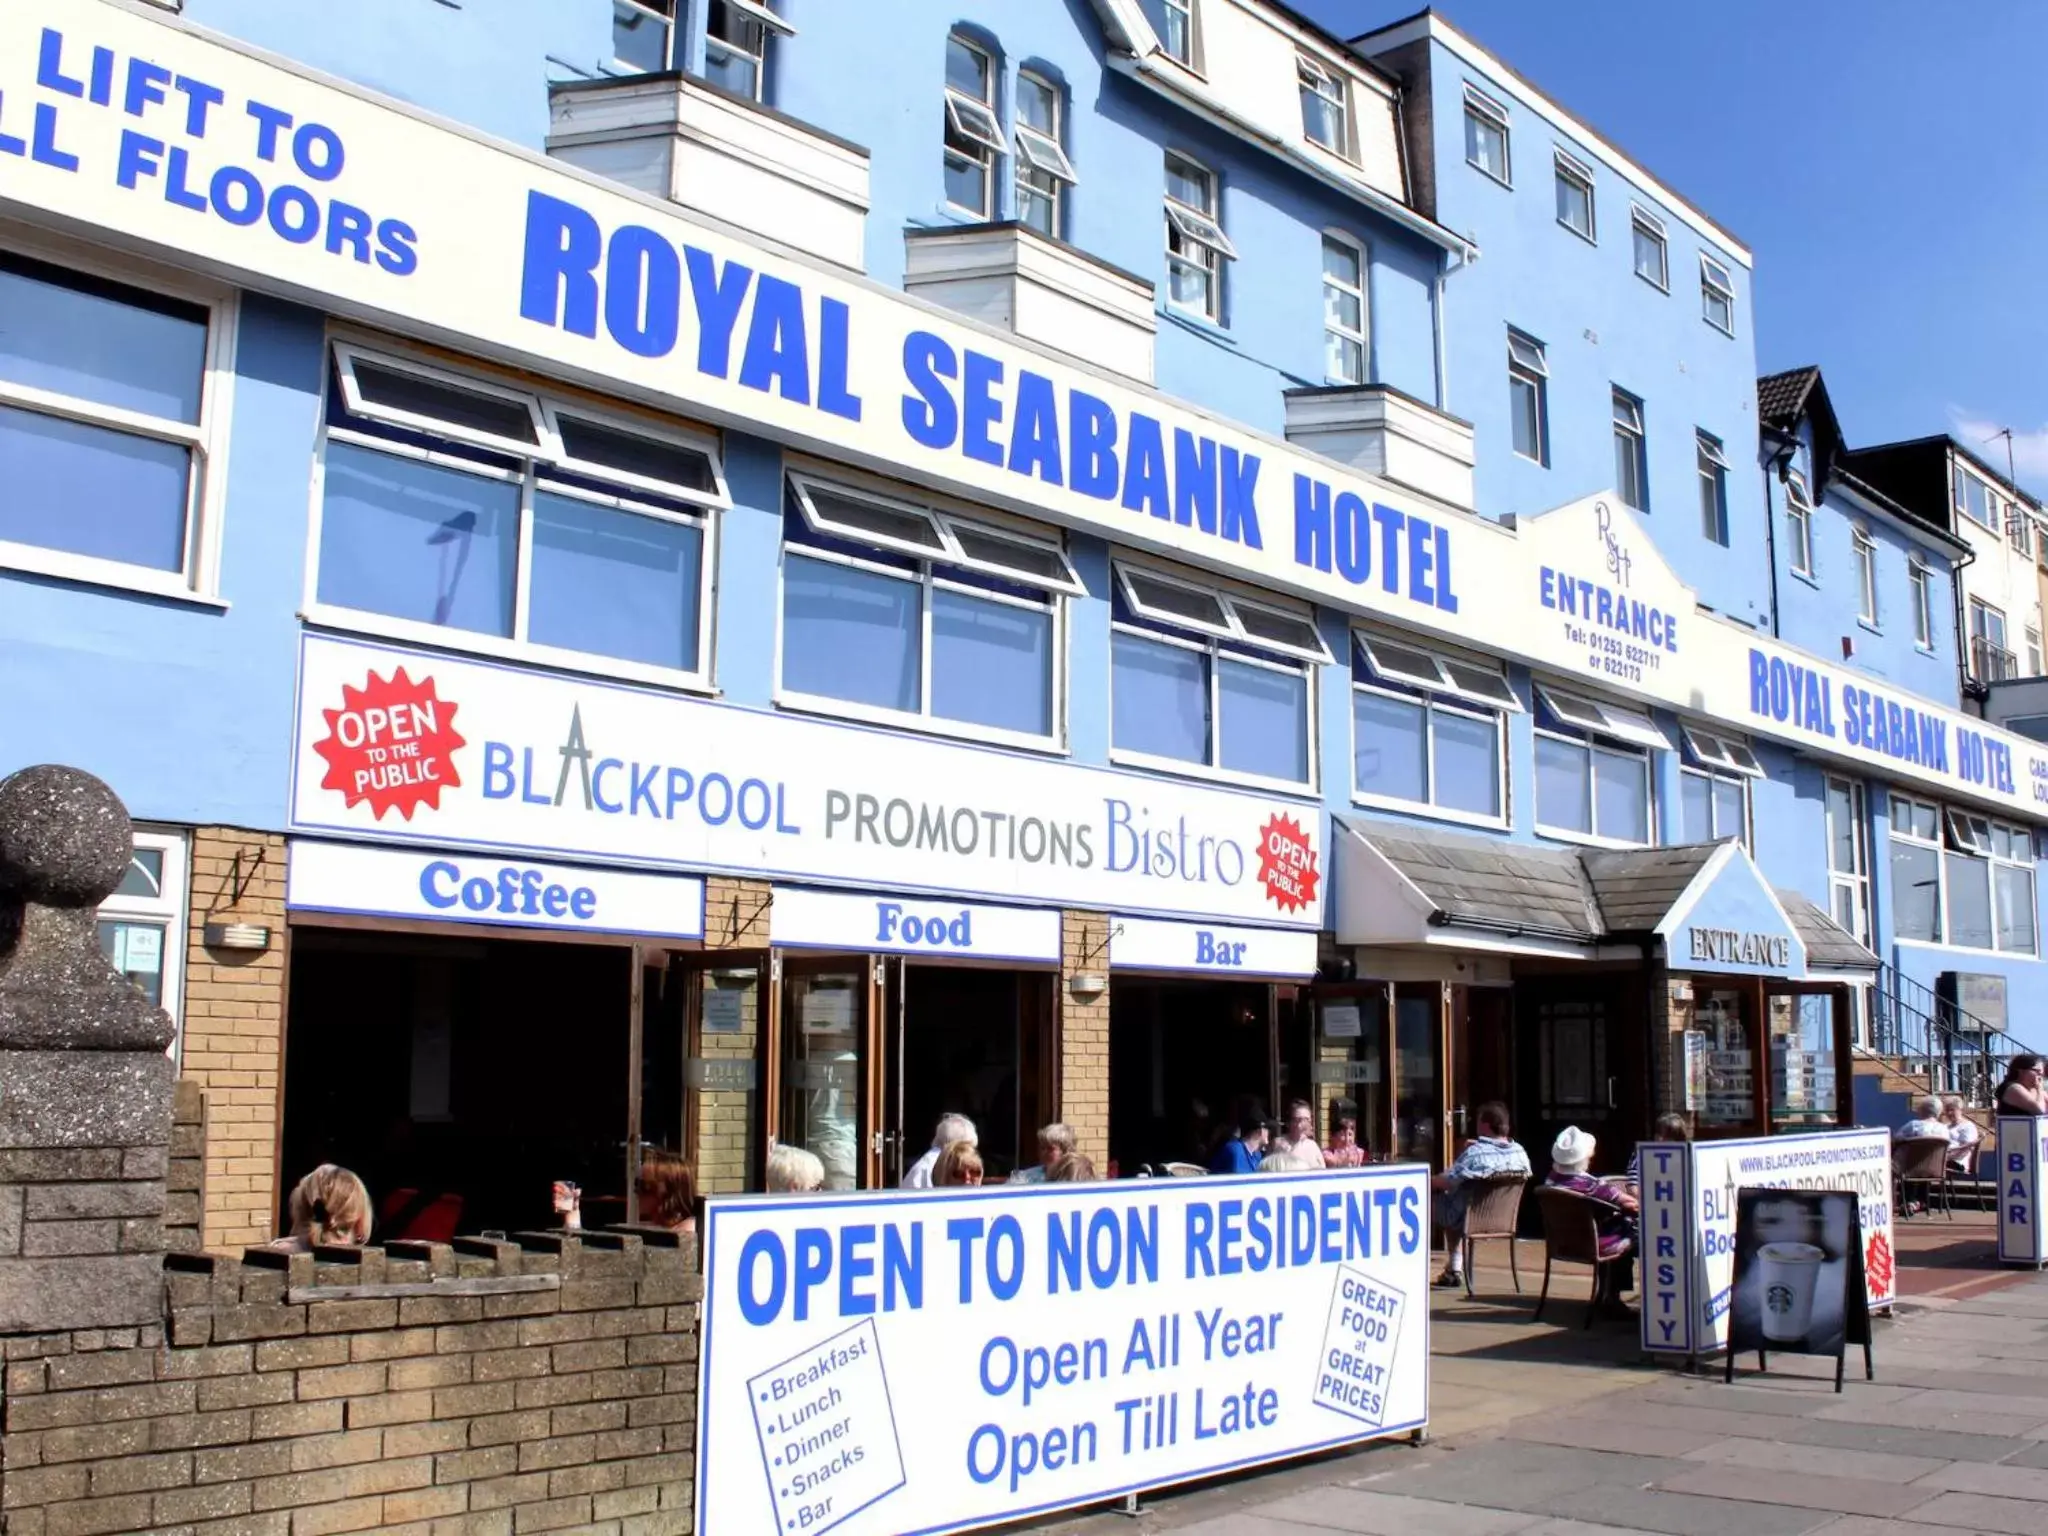 Facade/entrance in Royal Seabank Hotel